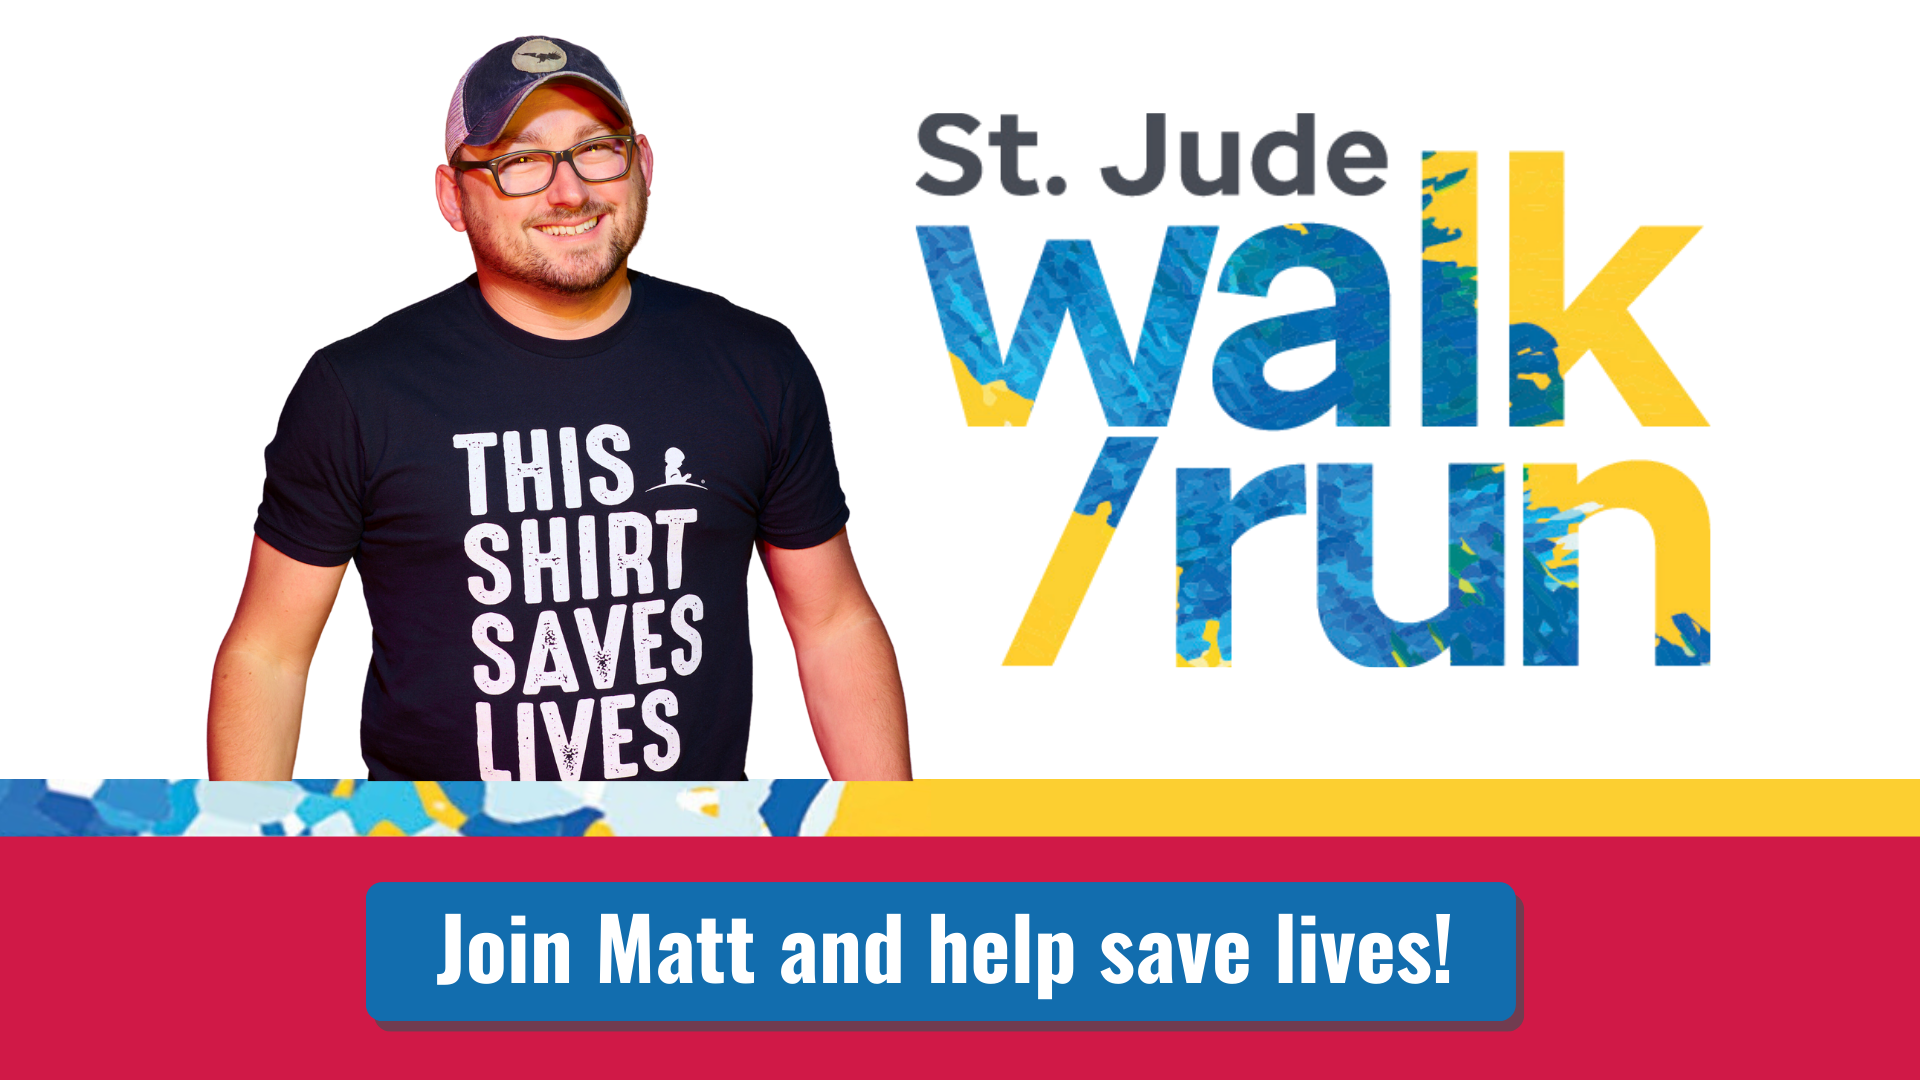 St Jude Walk/Run